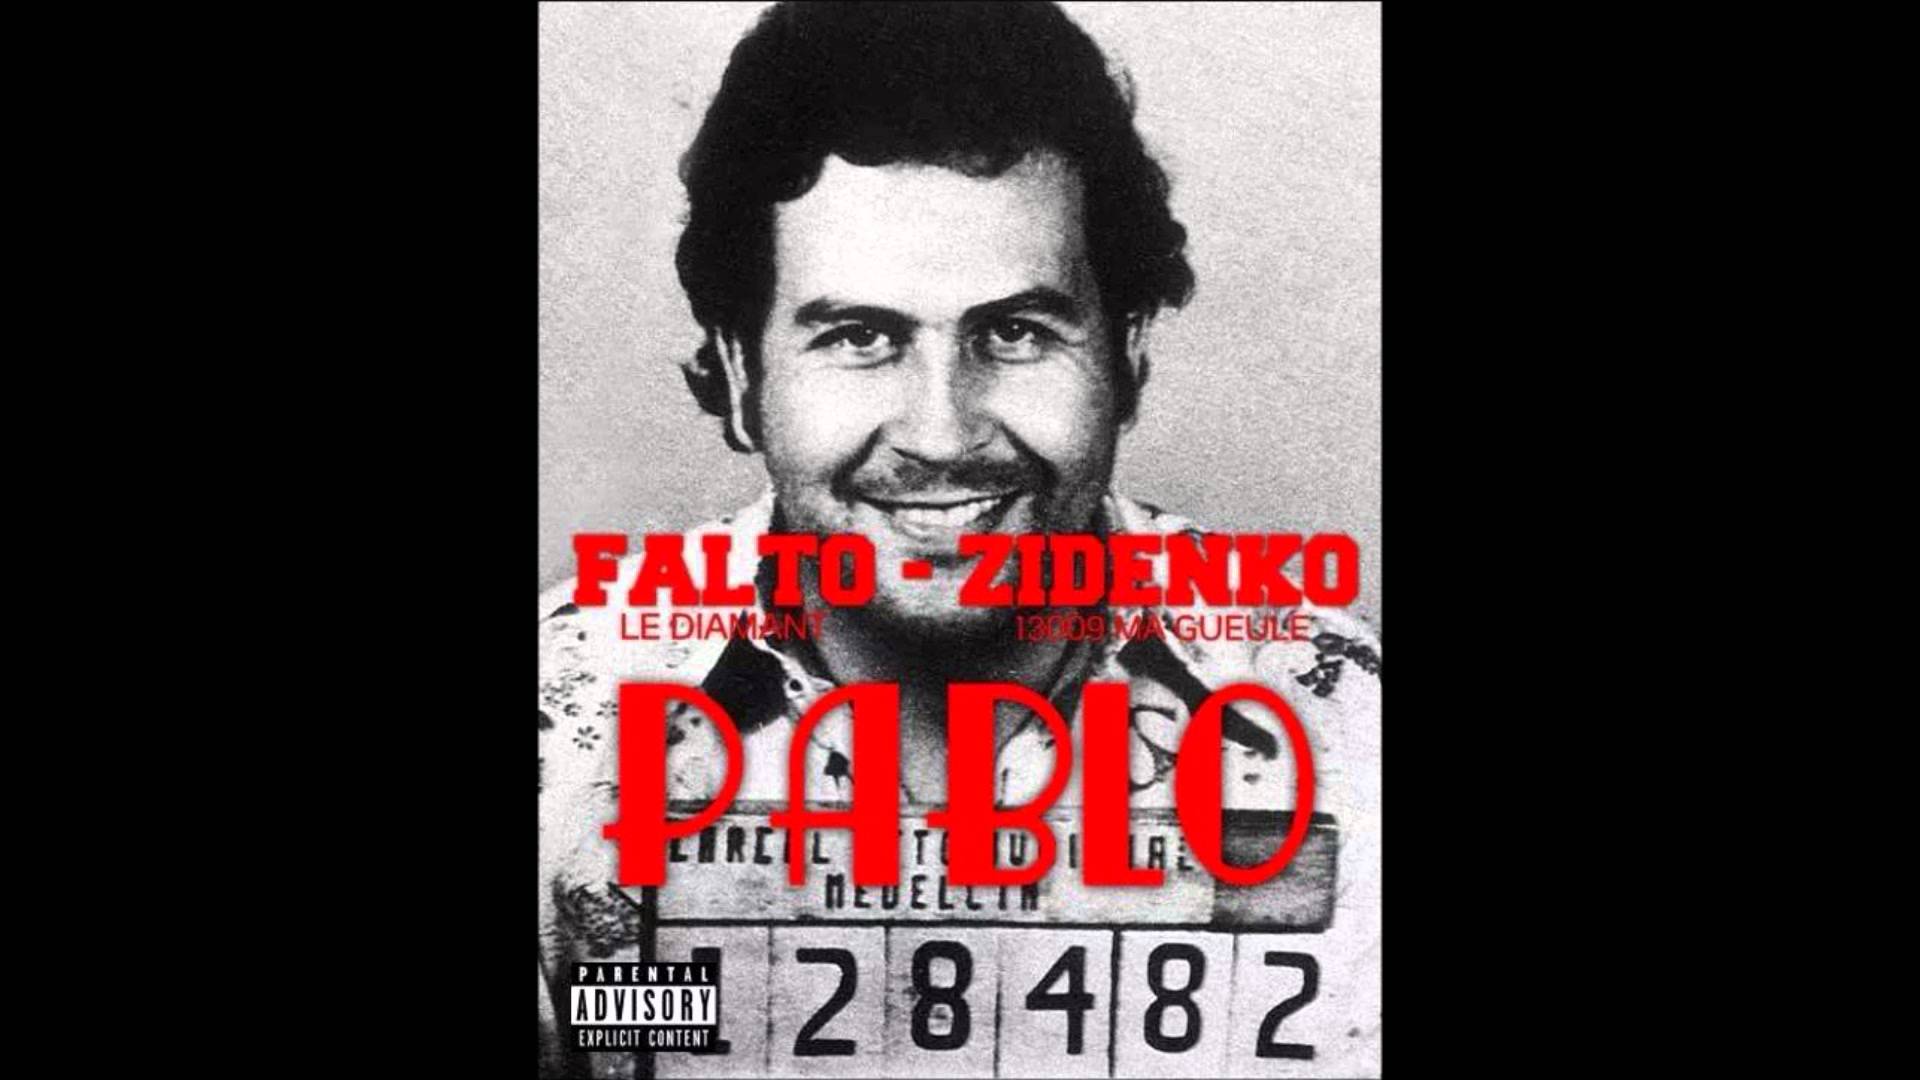 Falto Feat Zidenko // PABLO ESCOBAR // 2014 SON OFFICIEL